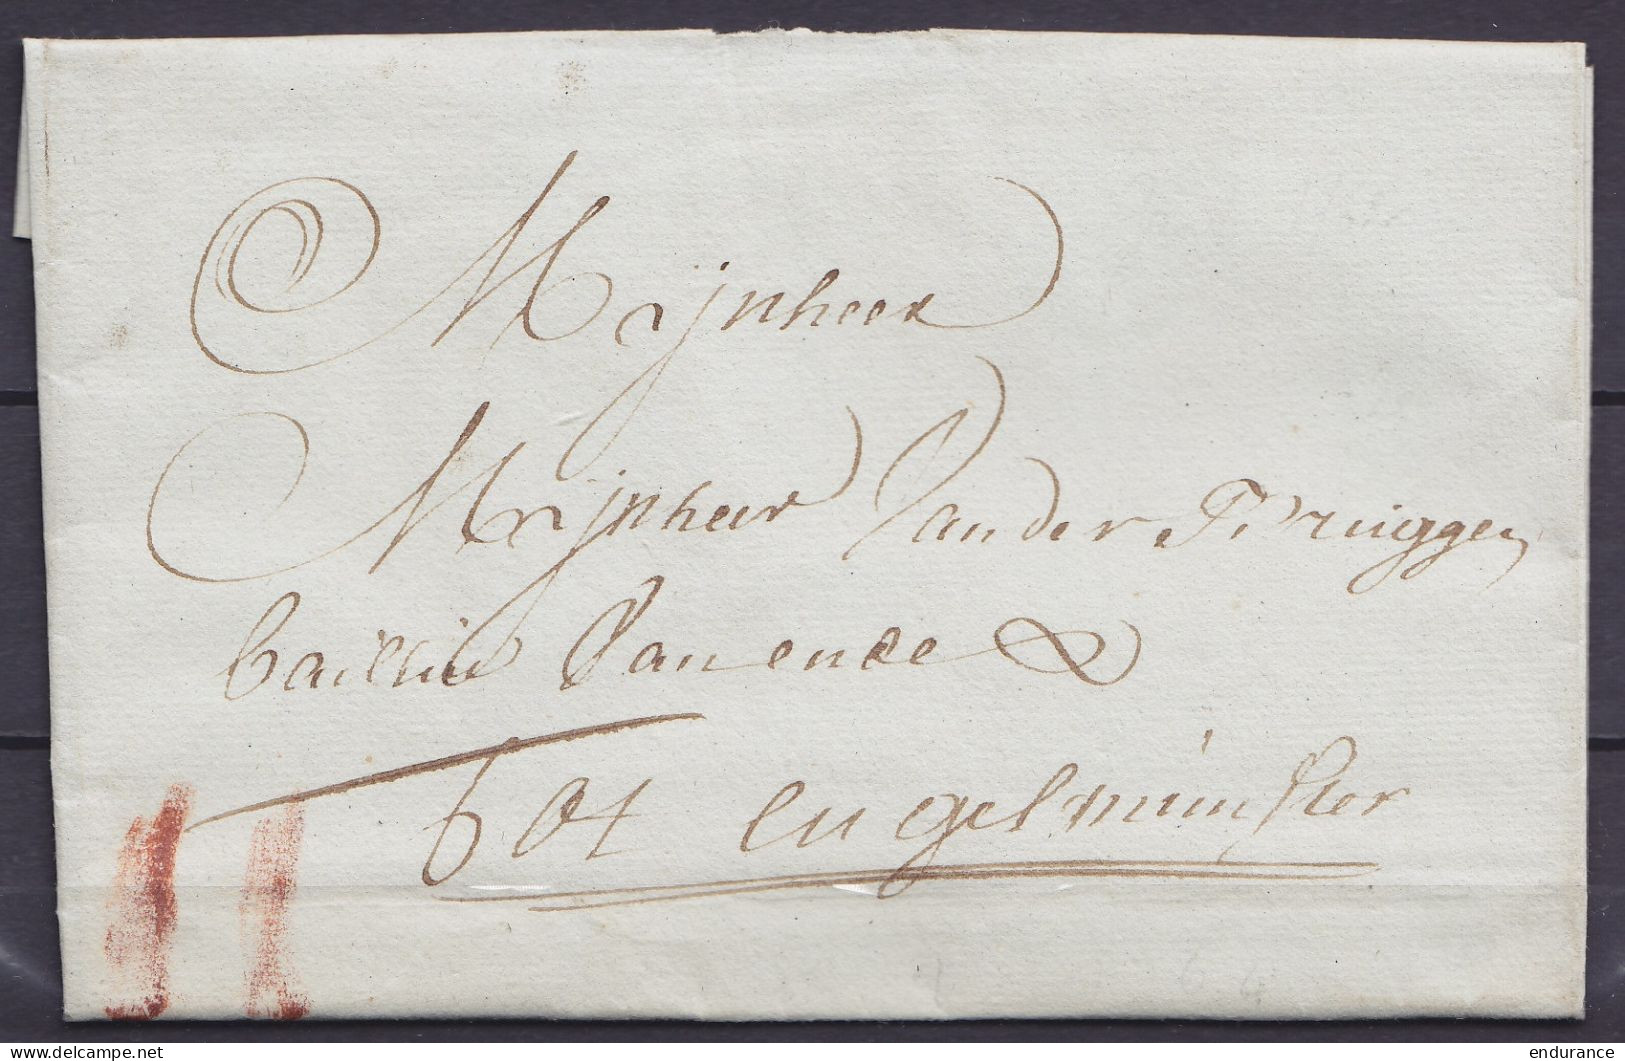 L. Datée 16 Juillet 1762 De GHENDT (Gand) Pour INGELMUNSTER - Port "II" à La Craie Rouge - 1714-1794 (Oostenrijkse Nederlanden)